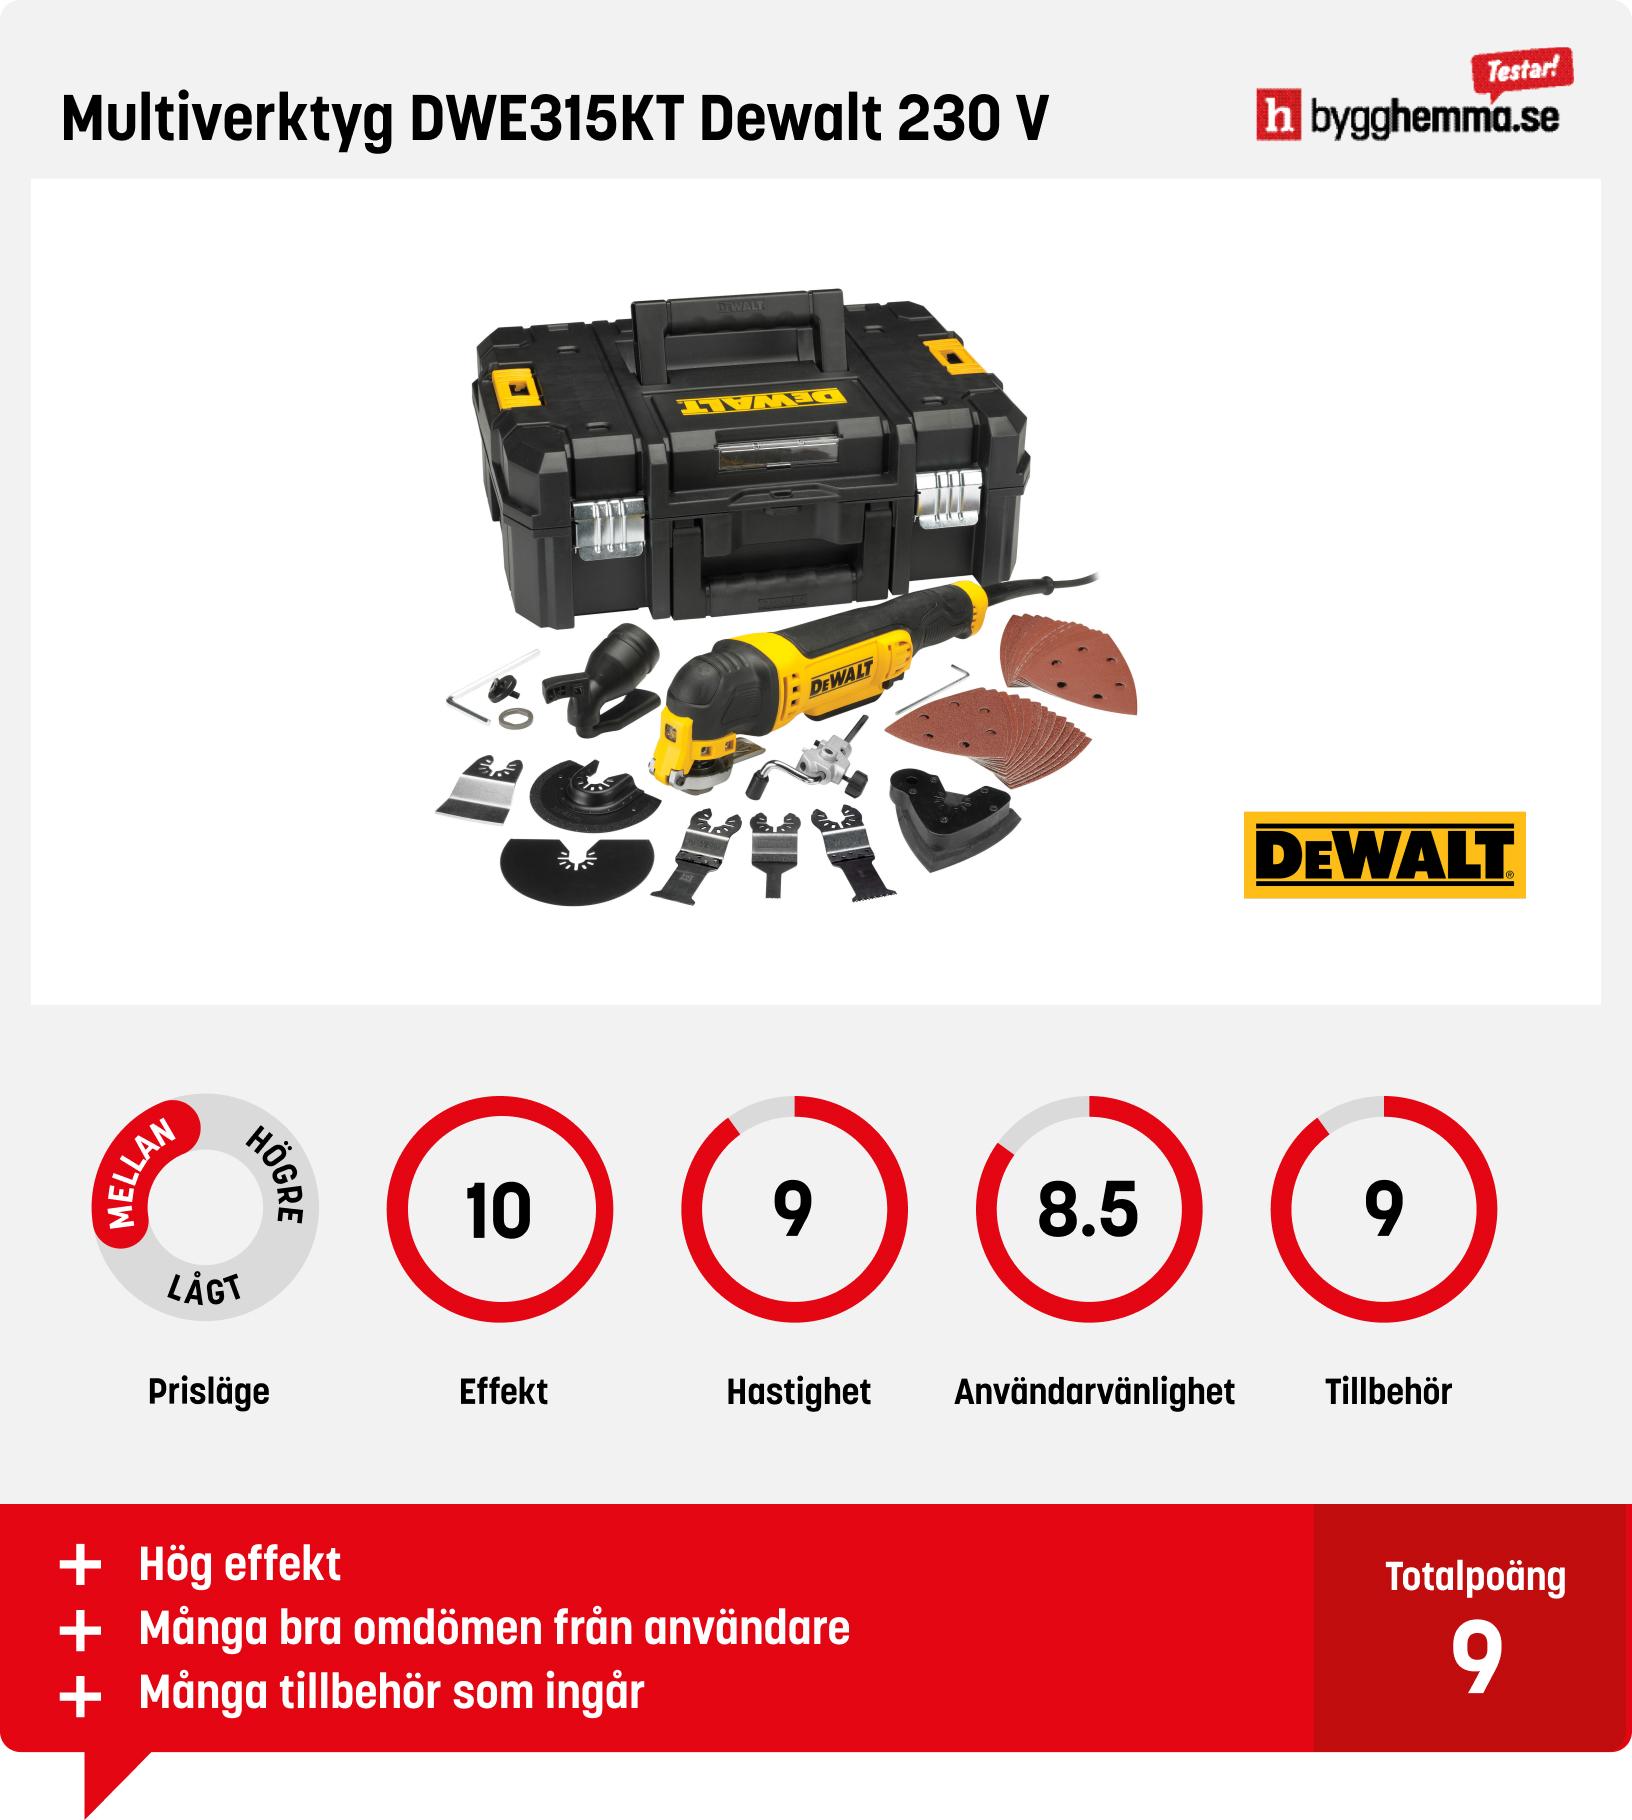 Multiverktyg test - Multiverktyg DWE315KT Dewalt 230 V